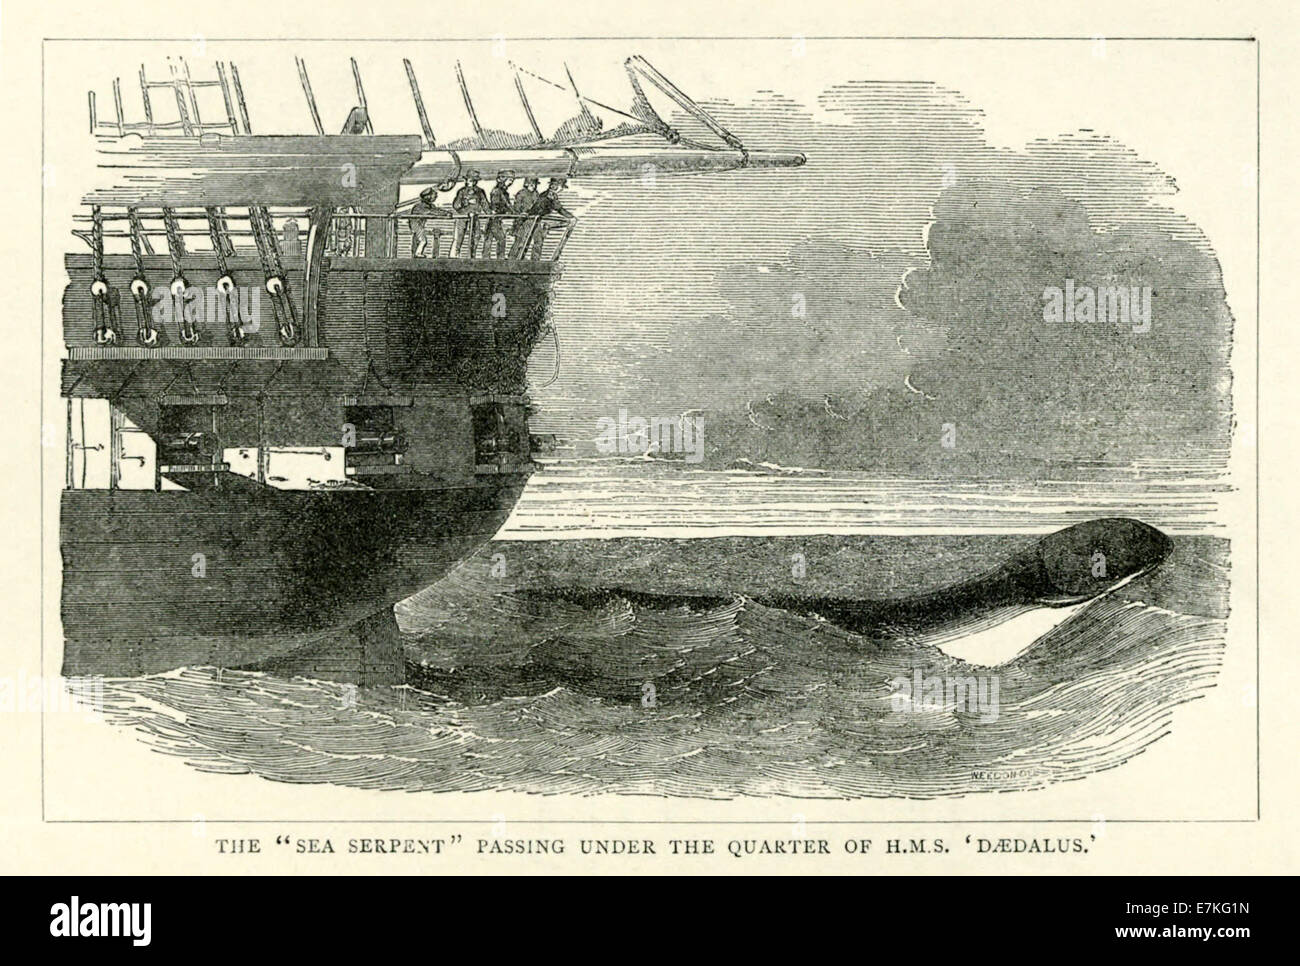 Die große Seeschlange von HMS Daedalus im 6. August 1848 Unterquerung des Quartals gesehen. Siehe Beschreibung für mehr Informationen. Stockfoto